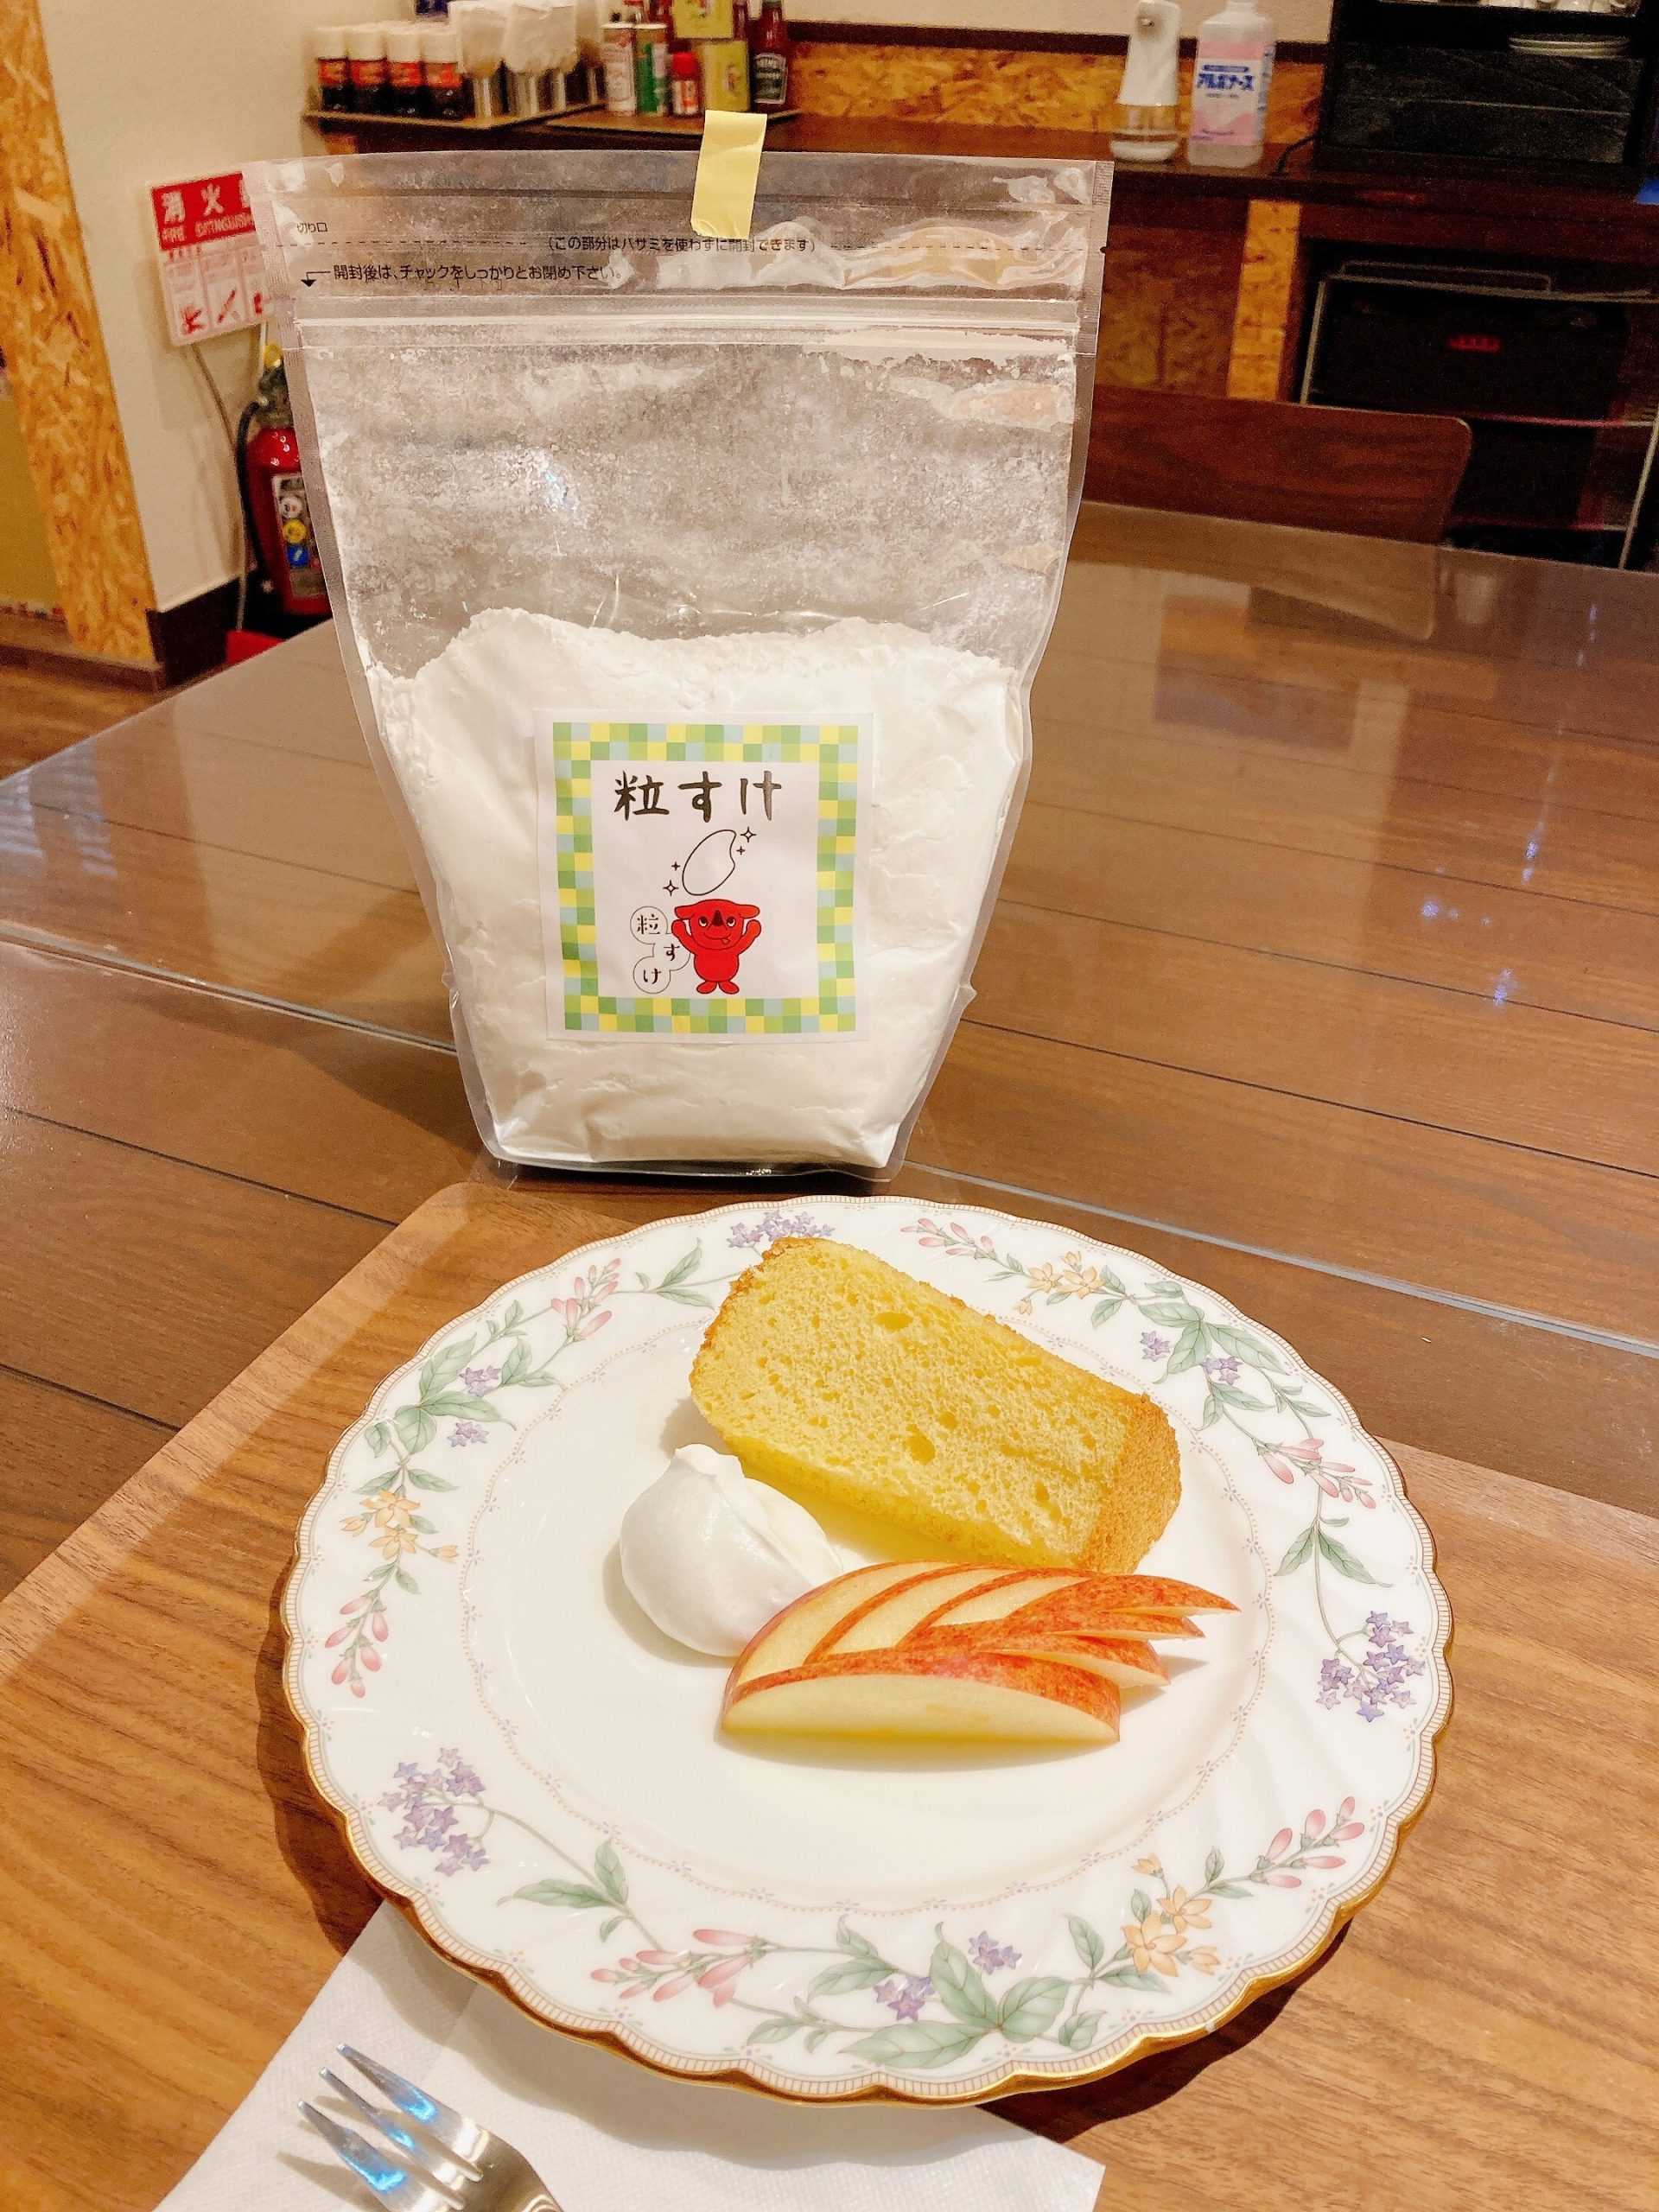 「粒すけ」の米粉を使ったシフォンケーキを開発した「川きん」さんが紹介されました！【bayfm「PRECIOUS REPORT」粒すけ特集】